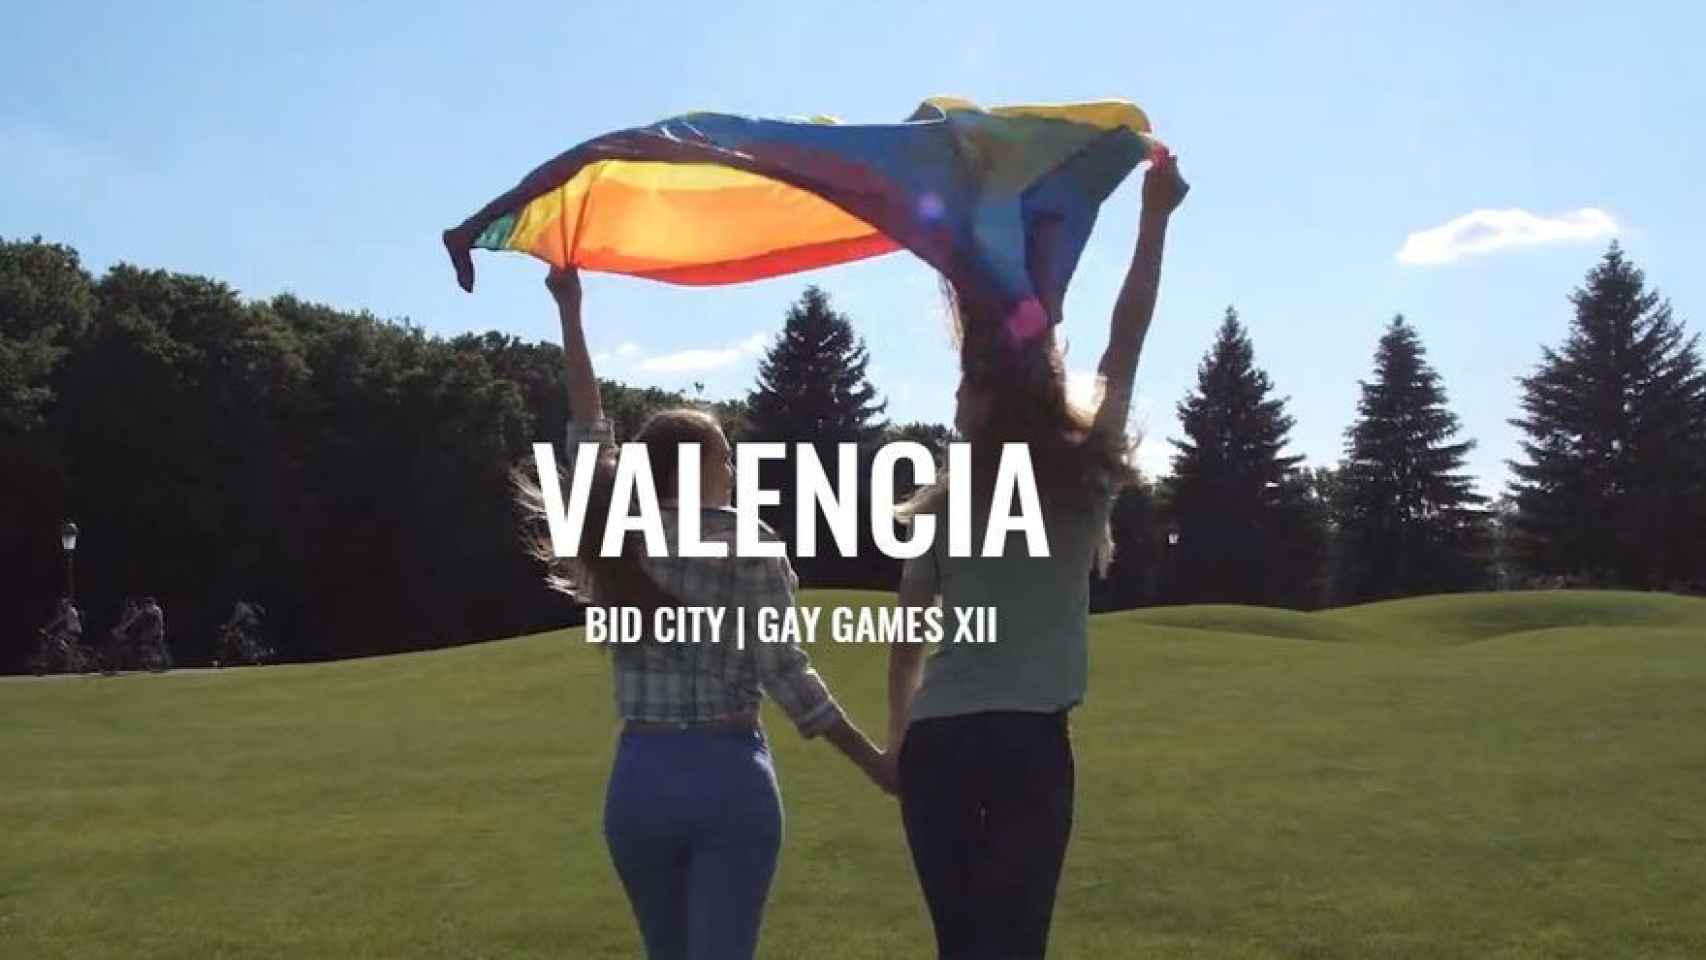 Imagen promocional de los Gay Games que acogerá Valencia. EE